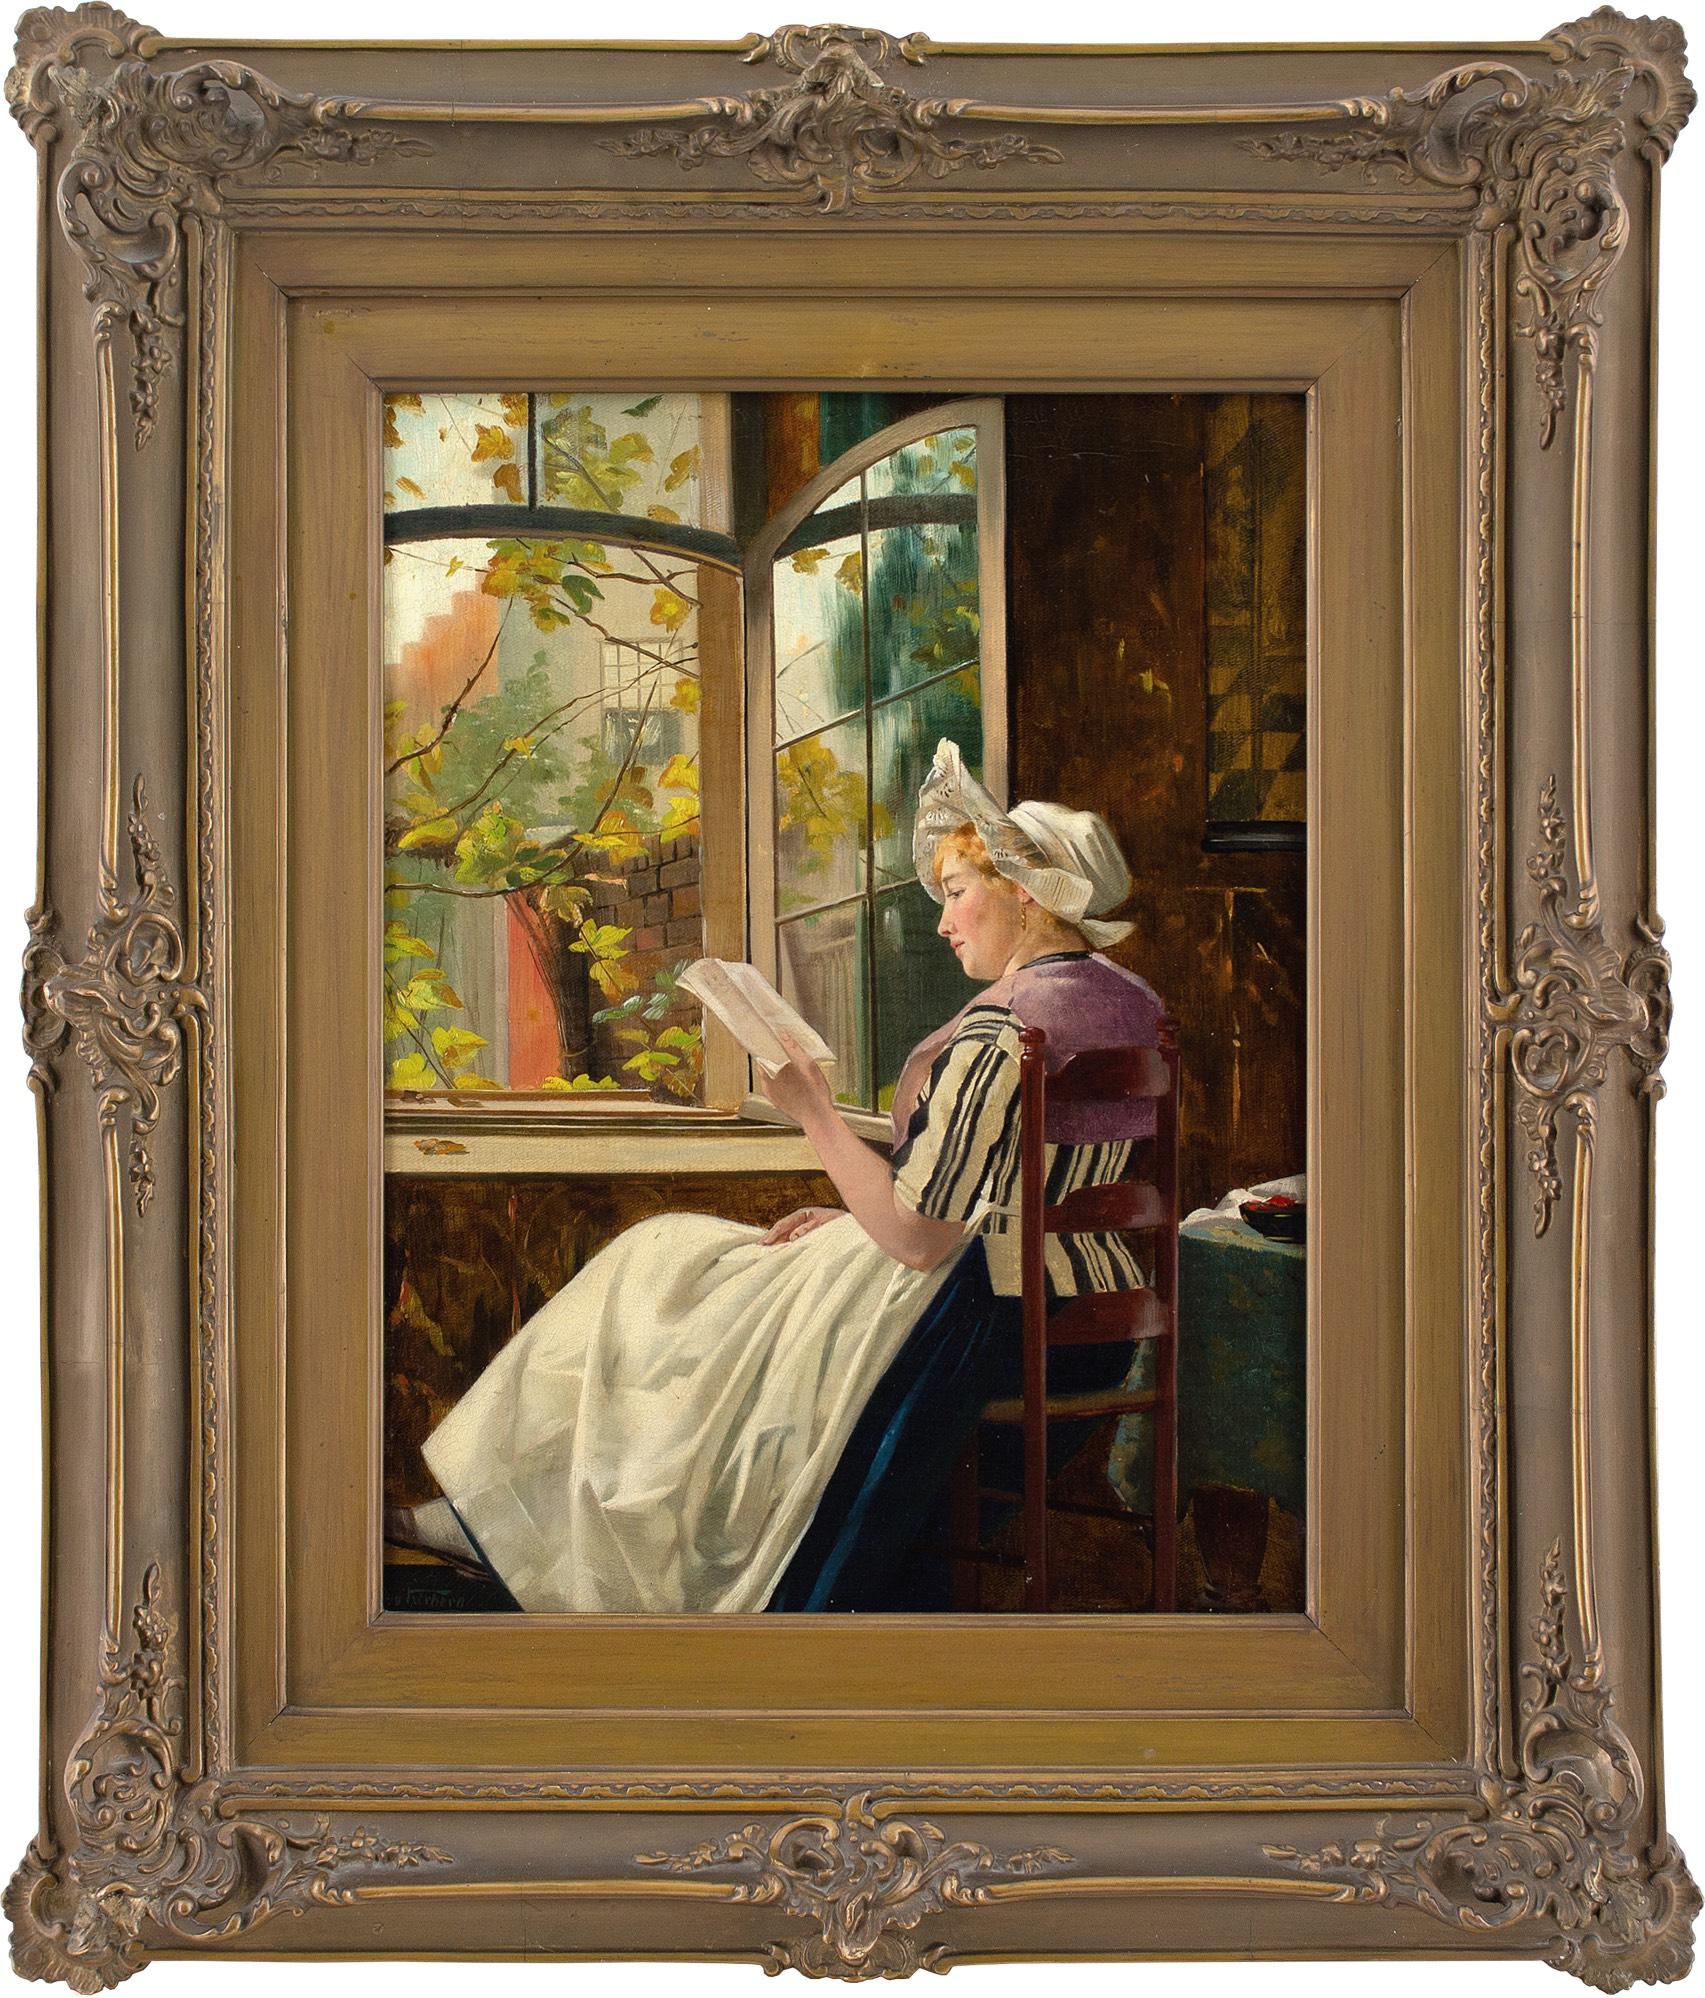 Dieses schöne Ölgemälde des deutschen Künstlers Otto Kirberg (1850-1926) aus dem späten 19. Jahrhundert zeigt eine junge Frau, die an einem offenen Fenster liest. Es ist eine charmante Darstellung, die einen Moment der Ruhe einfängt.

Otto Kirberg